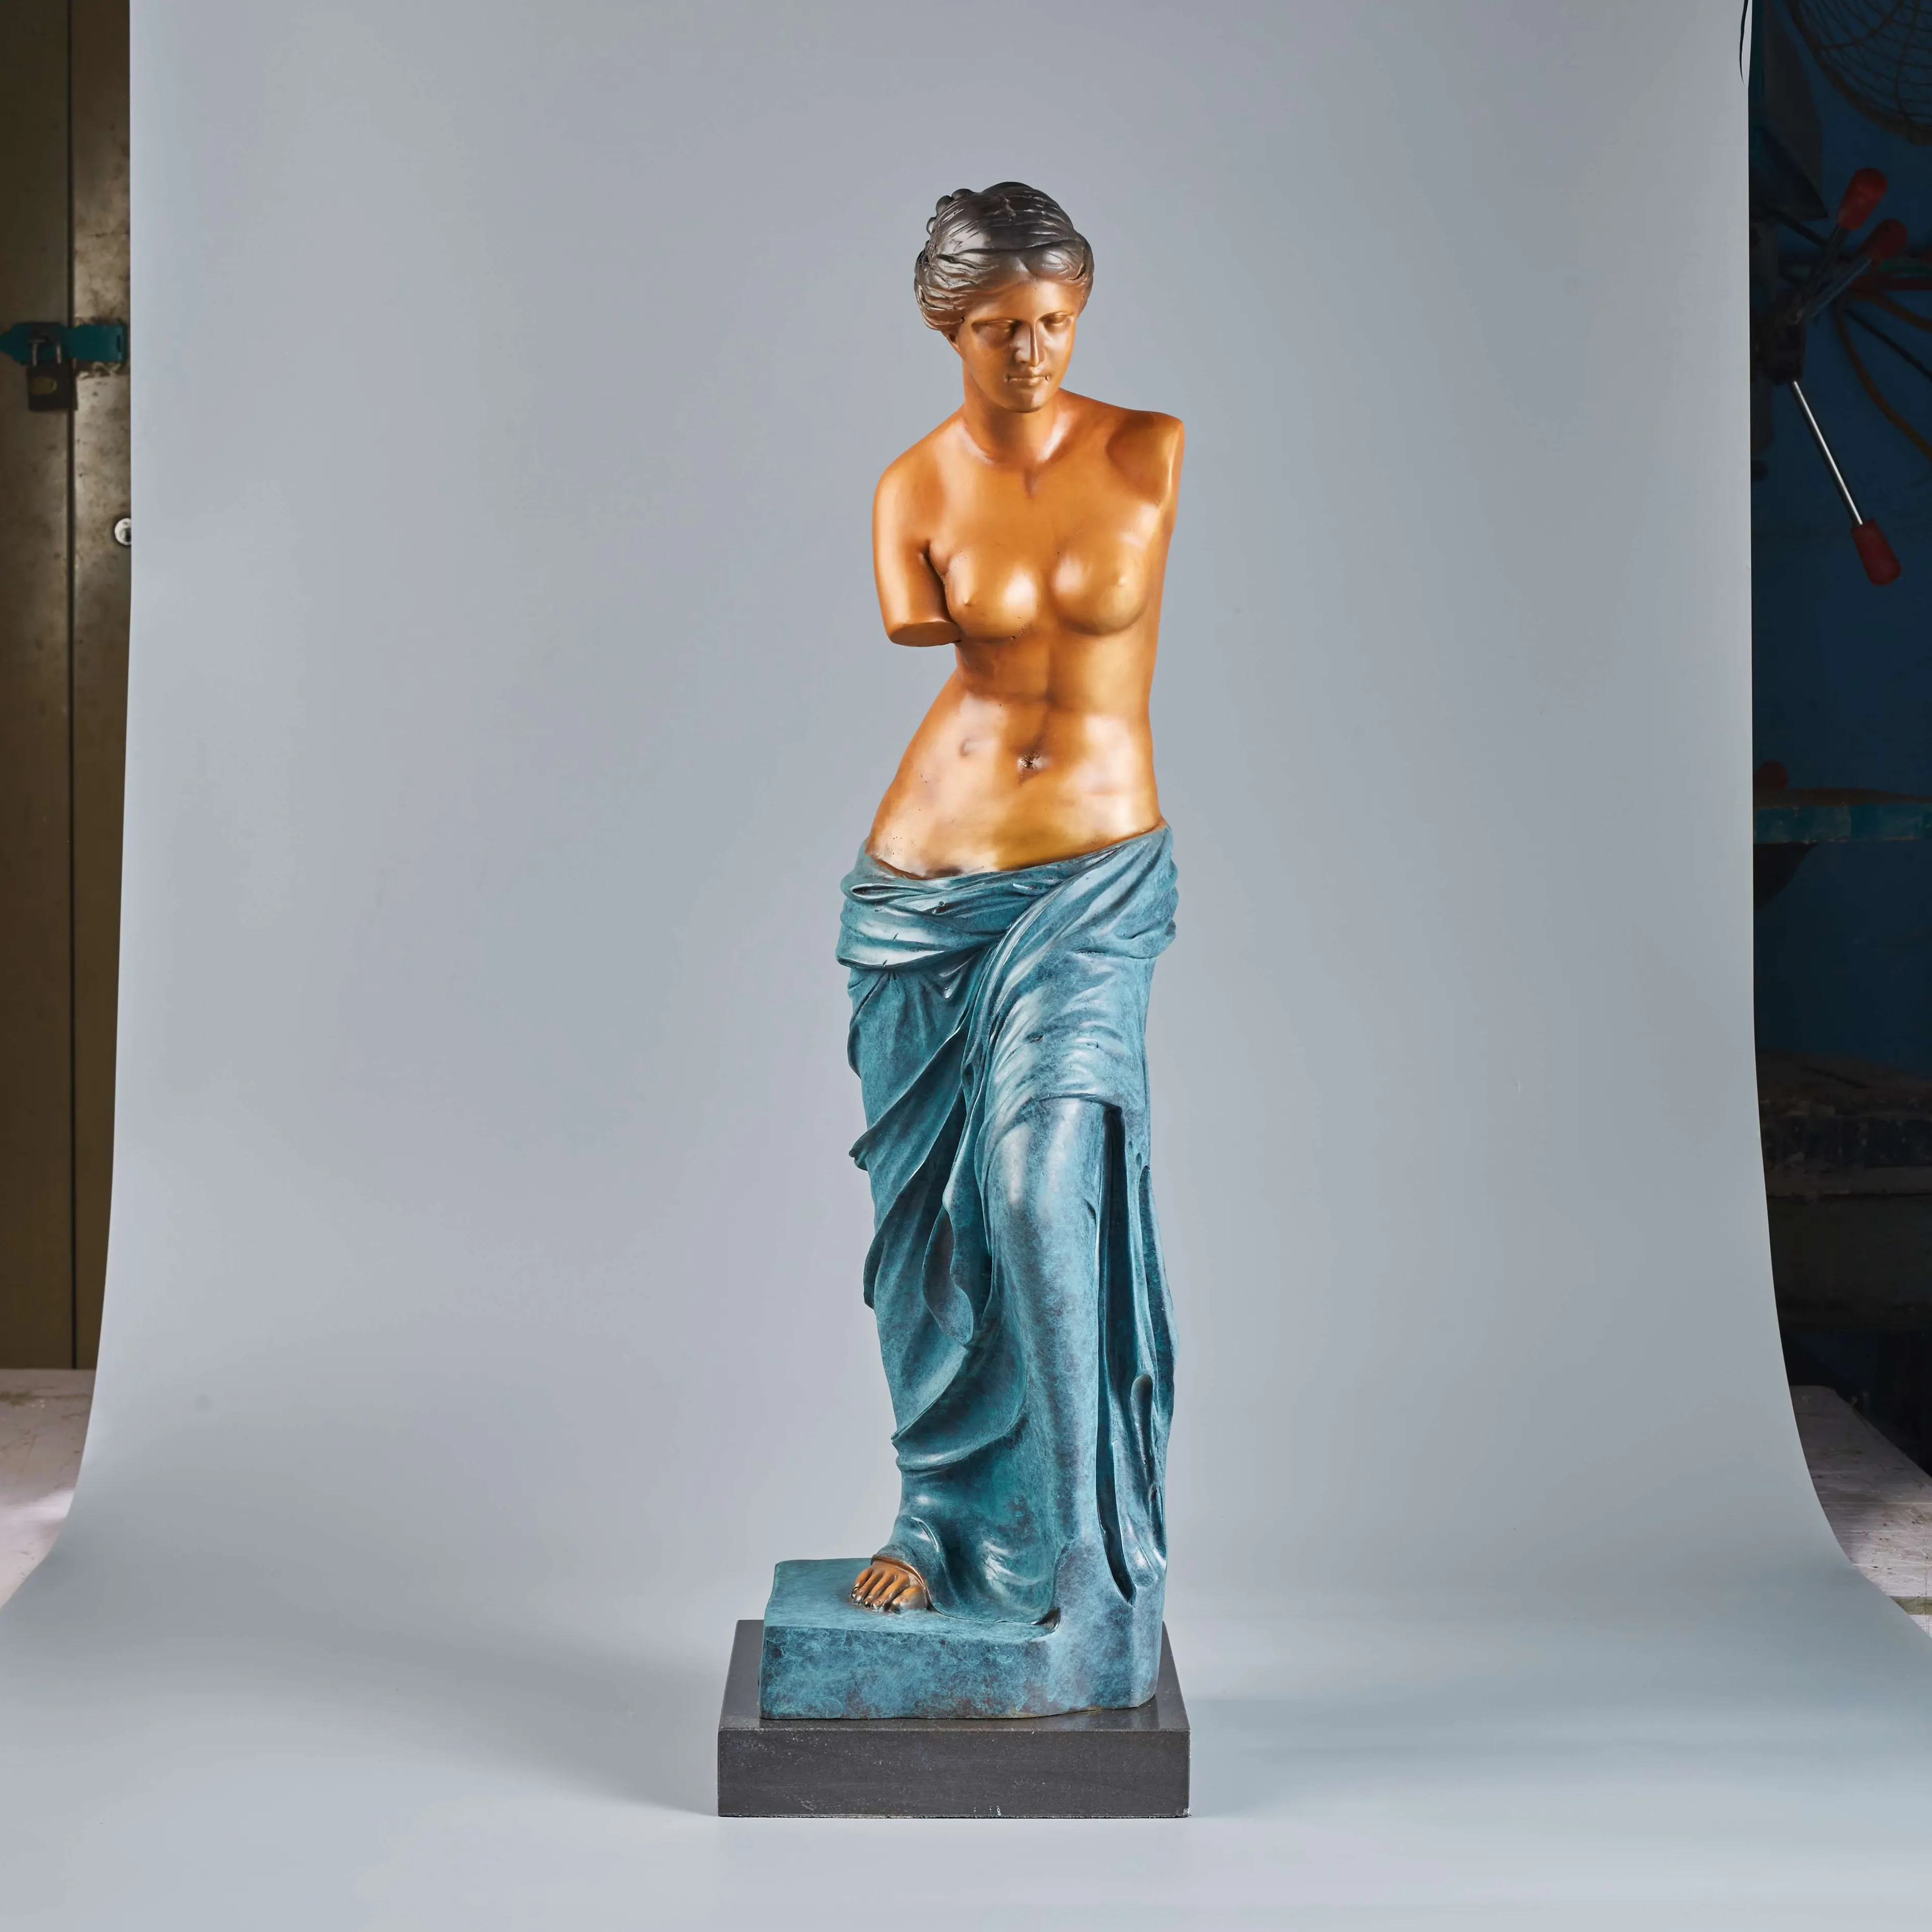 تمثال برونزي على شكل فينوس لفن النحت الروماني الأسطوري تمثال كوبر ديكور منزلي